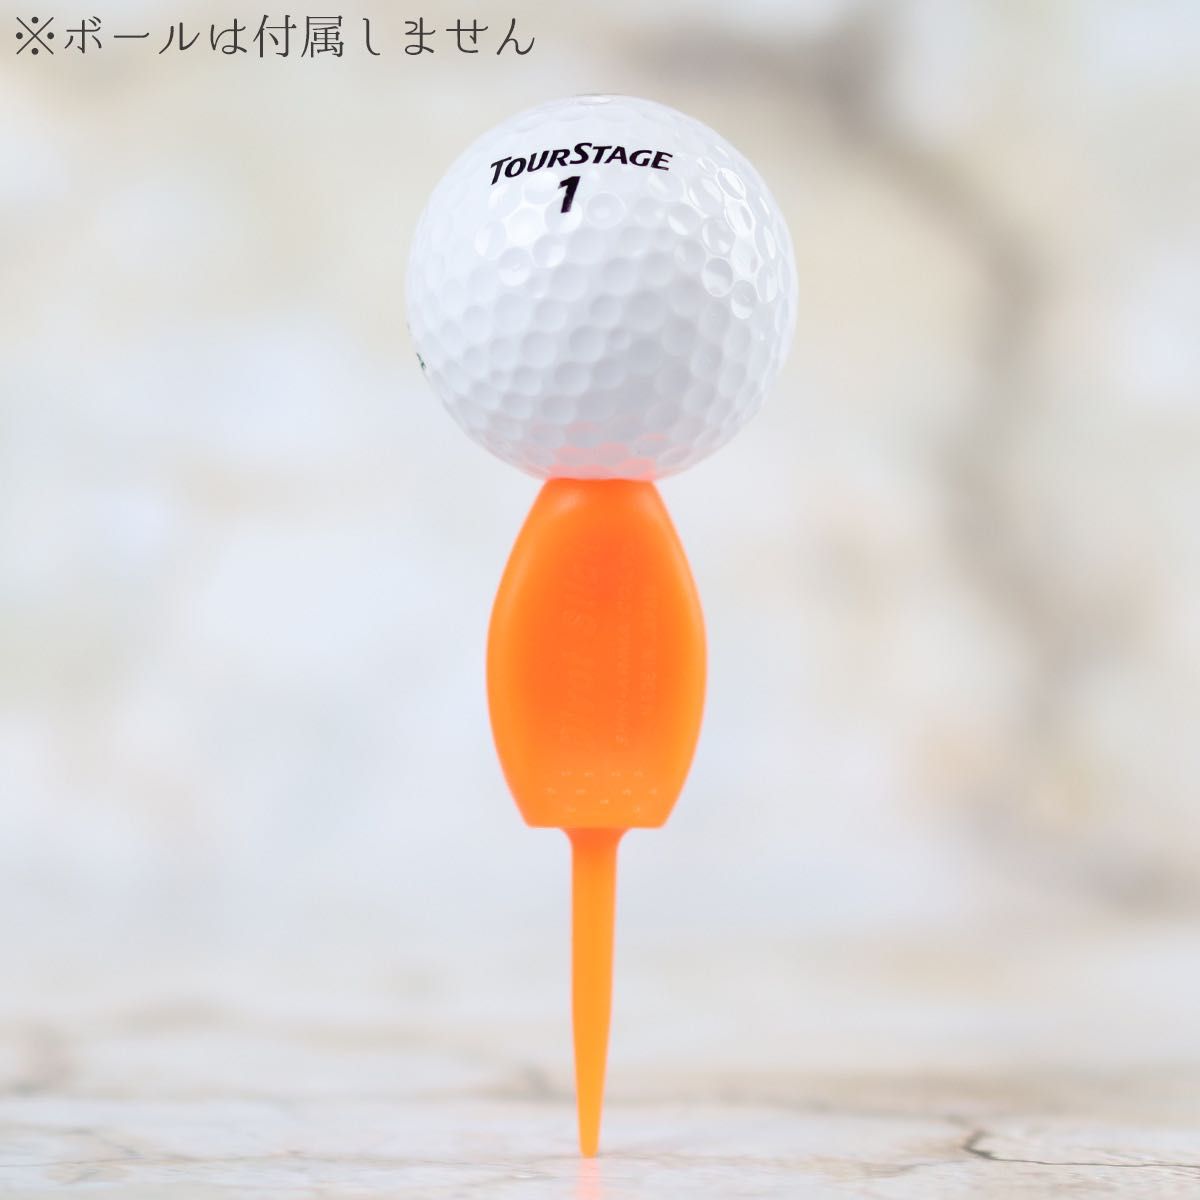 10本セット パリティー 蛍光色 オレンジ色 ゴルフボール 跡 マーク ゴルフティー ティーペグ グリーンフォーク b098o